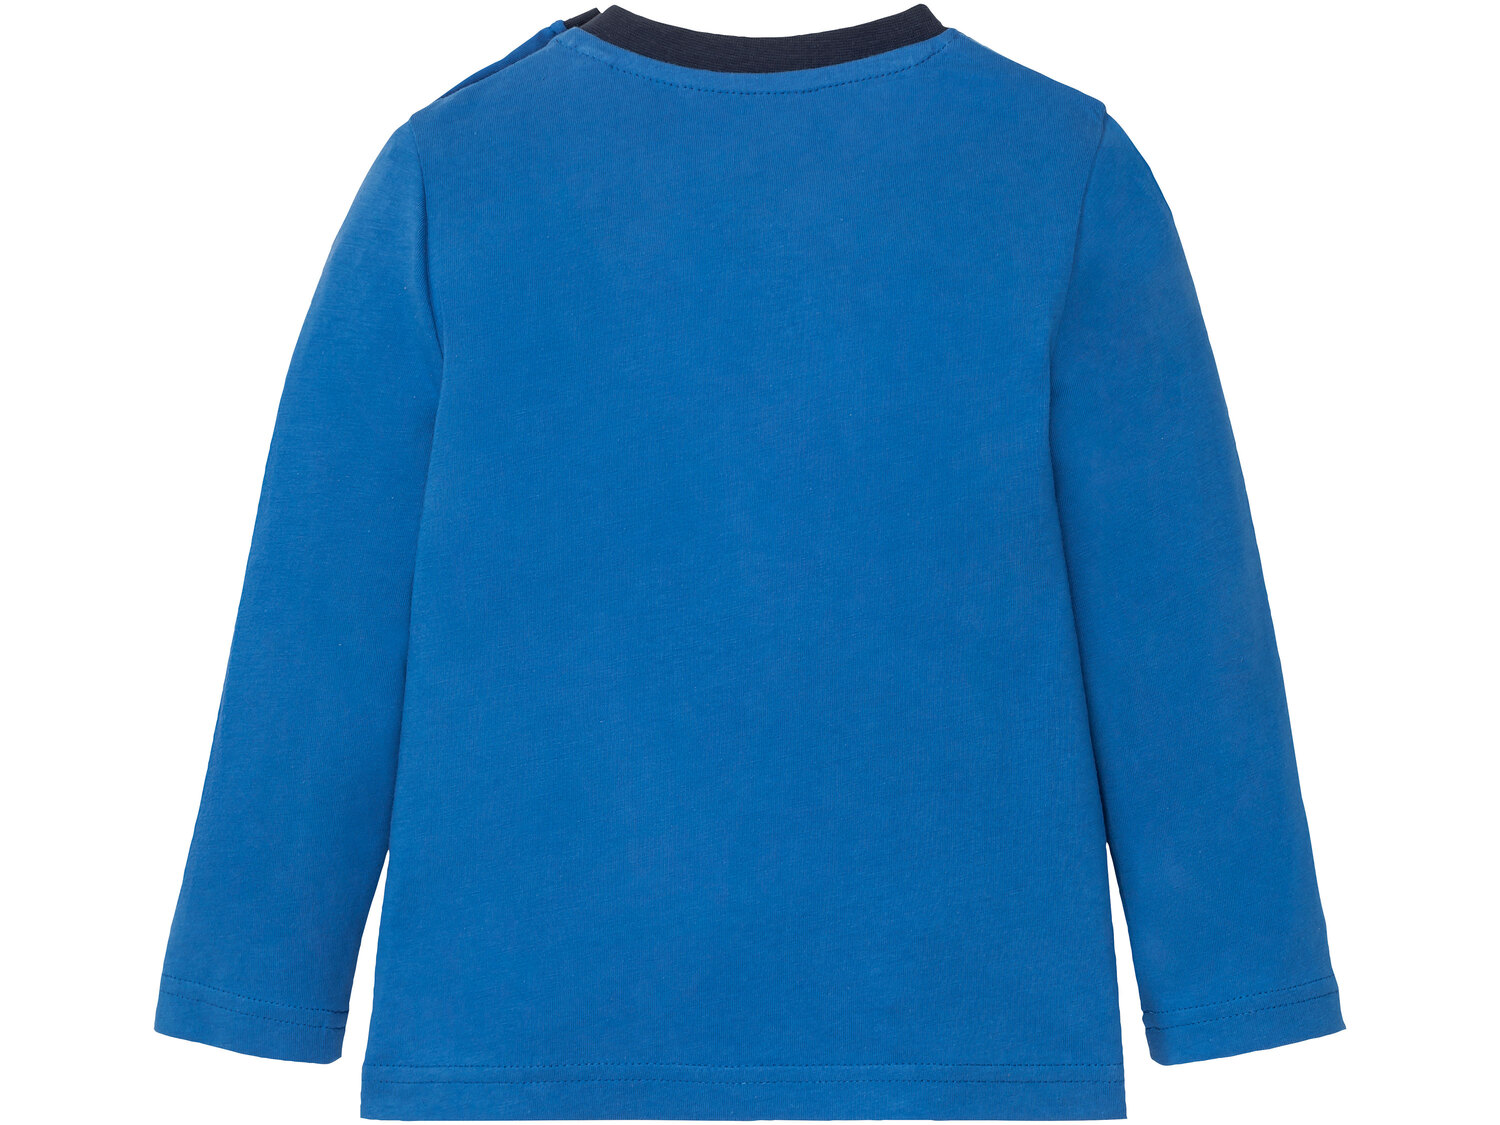 Piżama dziecięca , cena 17,99 PLN 
- rozmiary: 86-116
- 100% bawełny
Dostępne ...